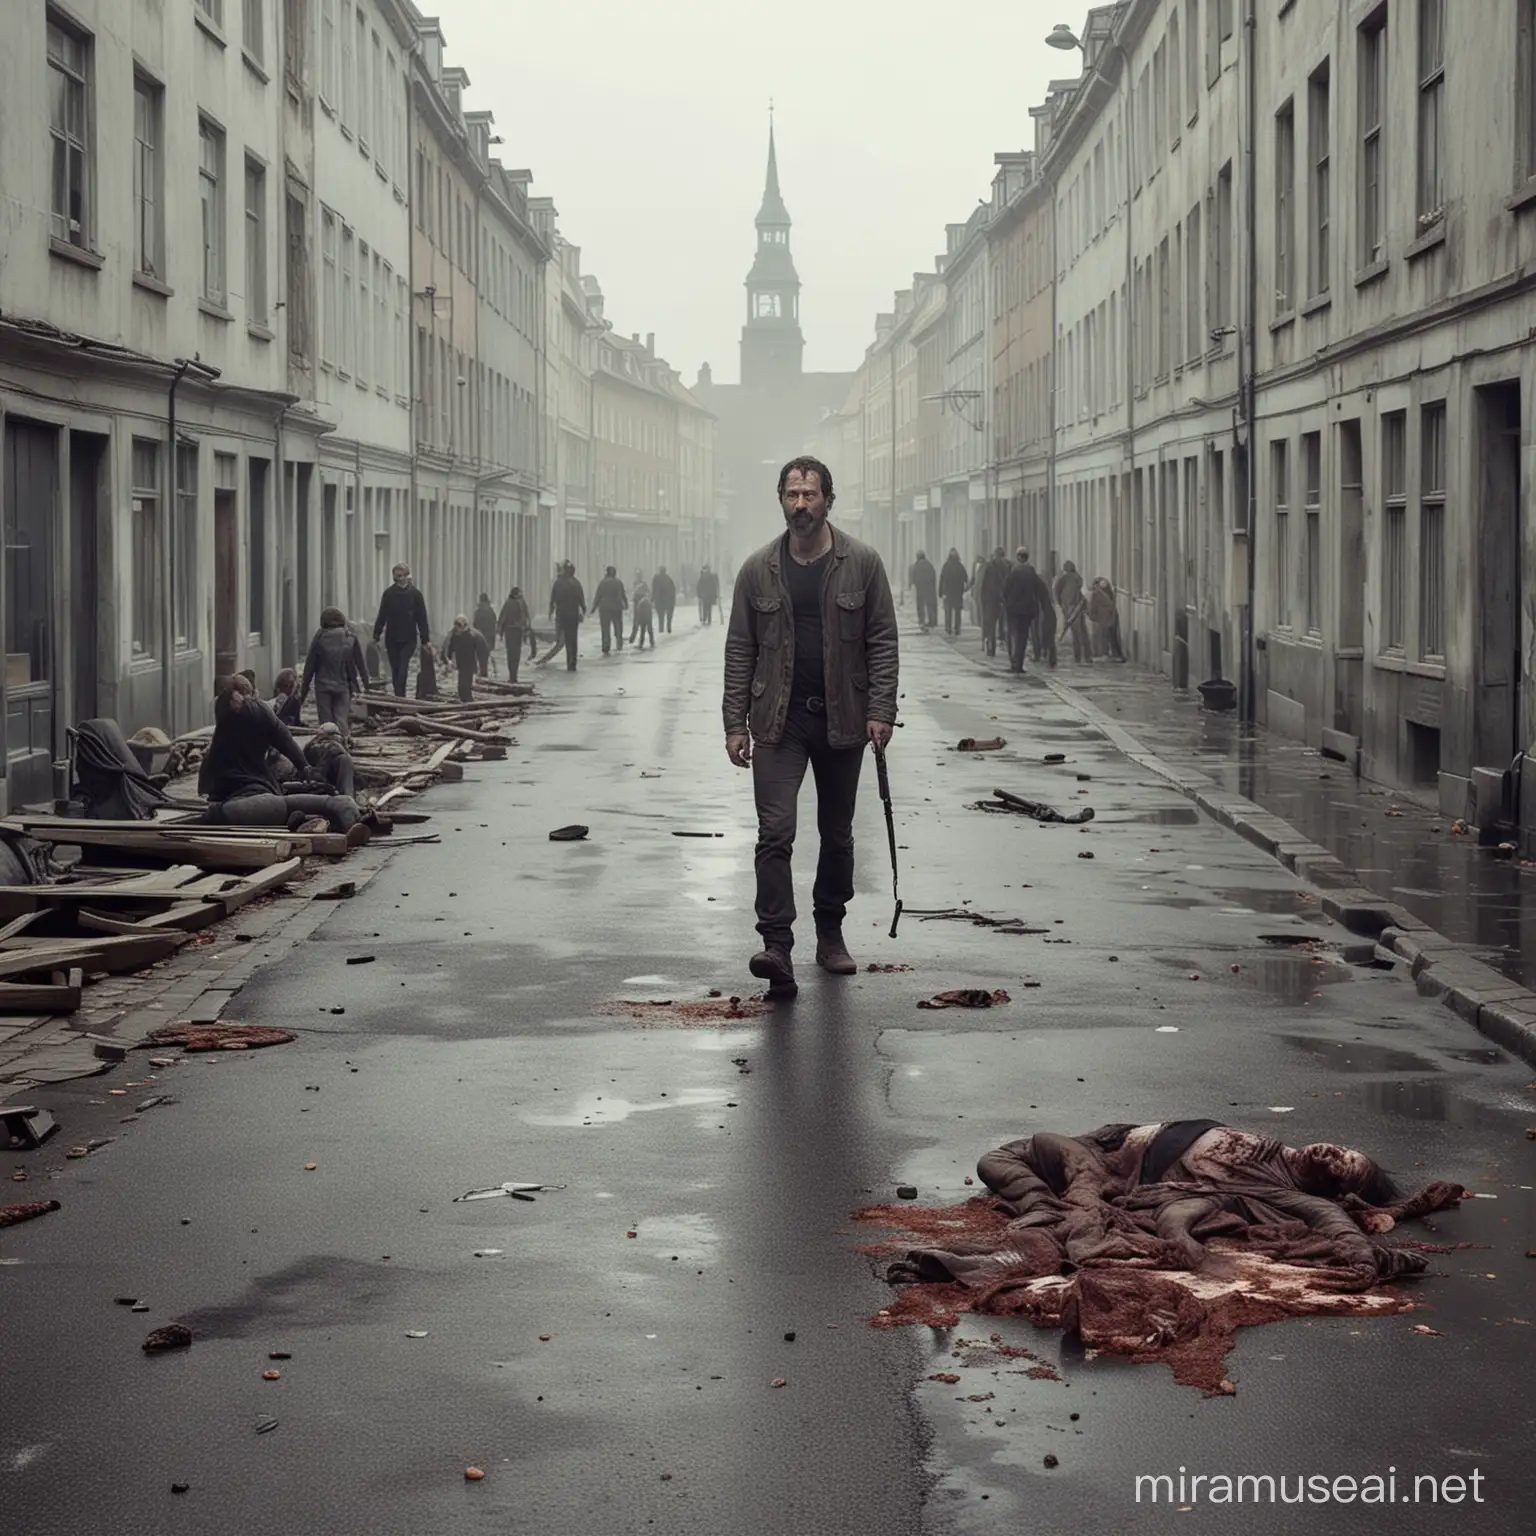 A scene from the series The Walking Dead if it was shot in Copenhagen.